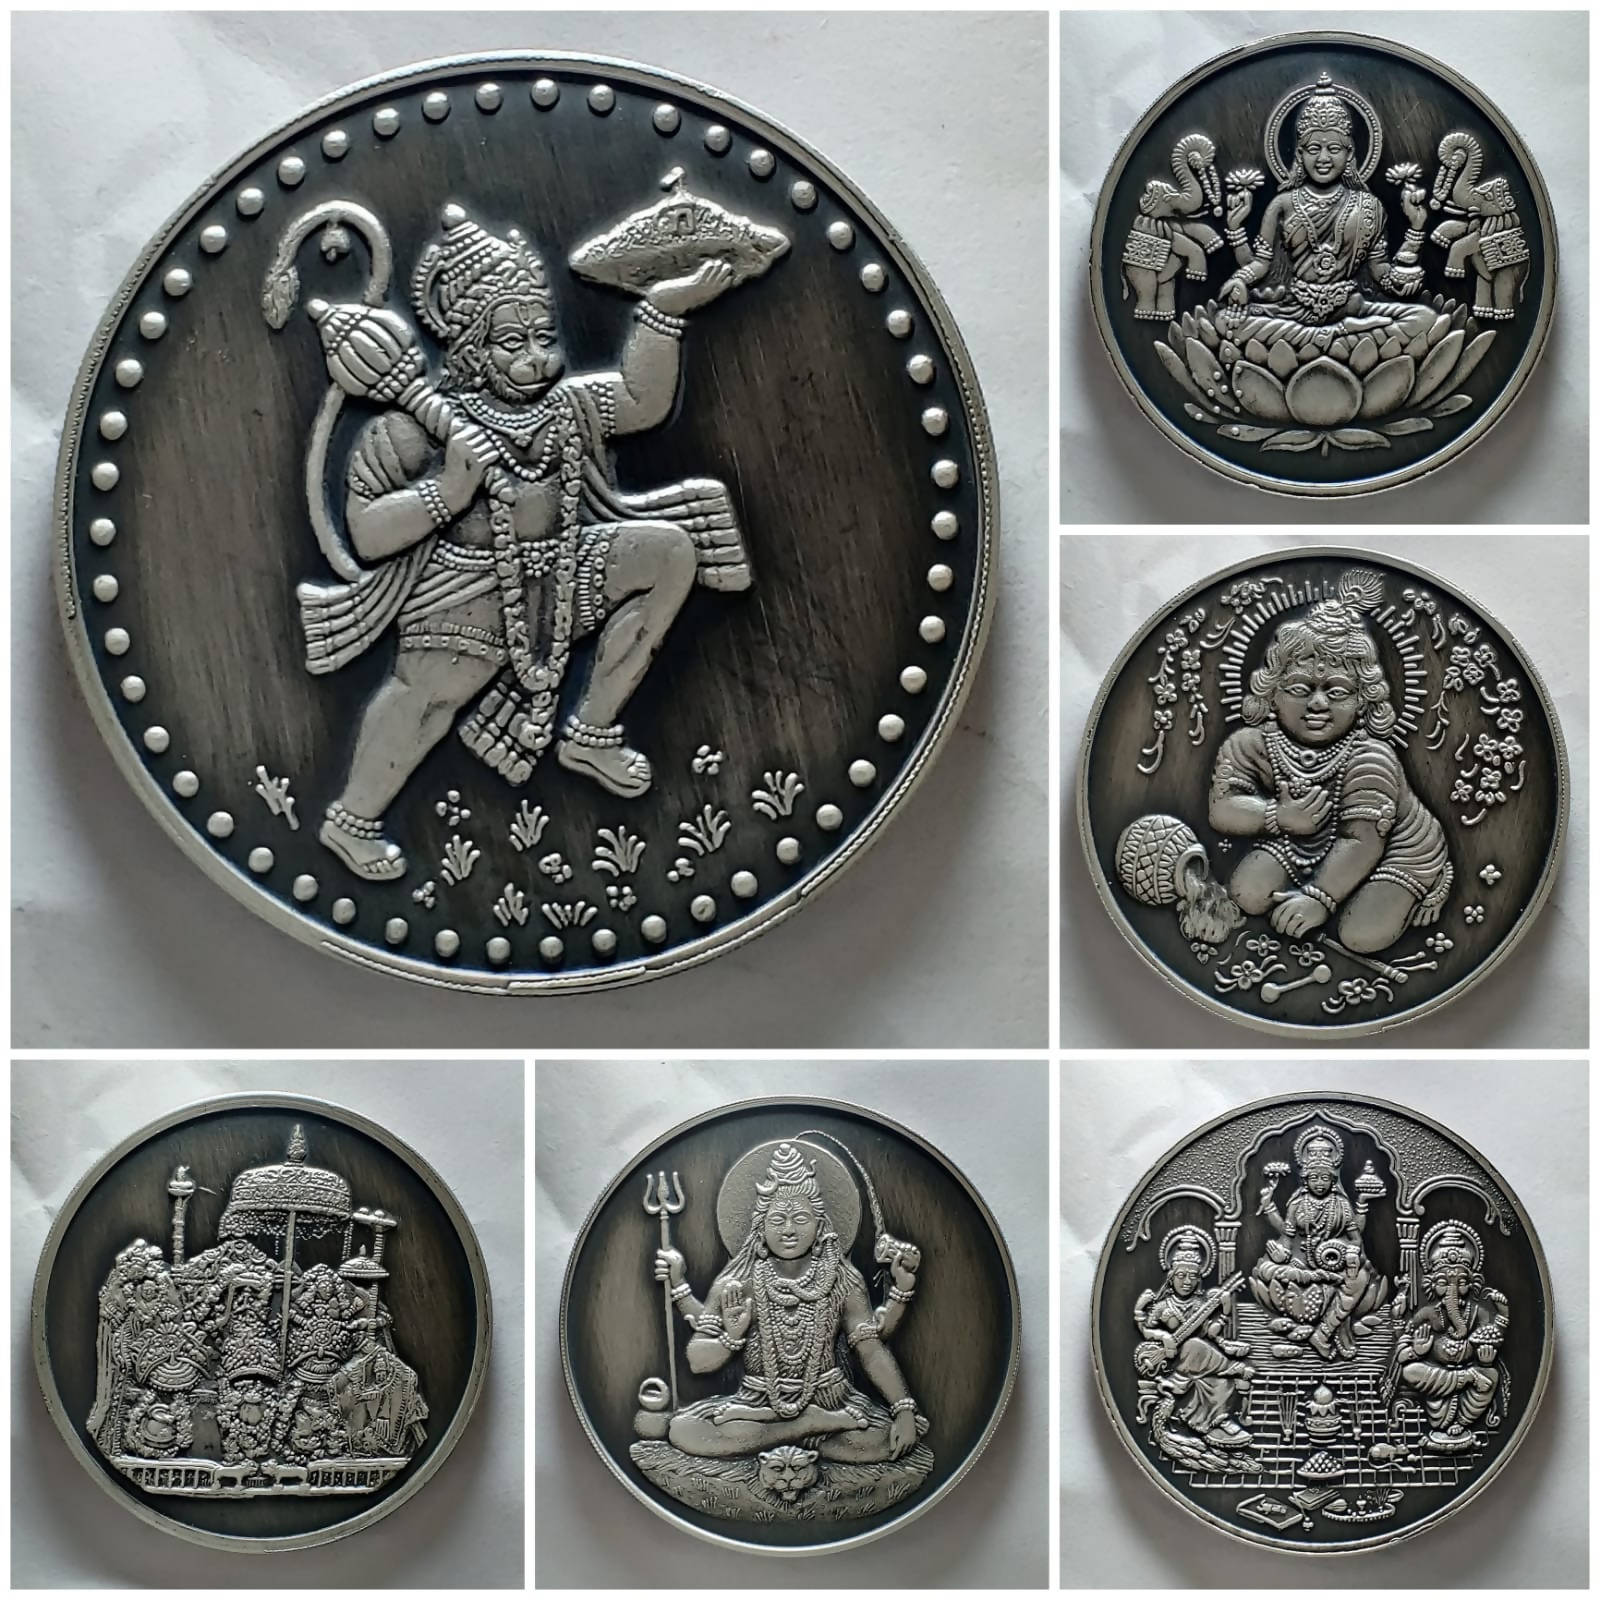 Antique Finish Silver Coins Sarafa Bazar India